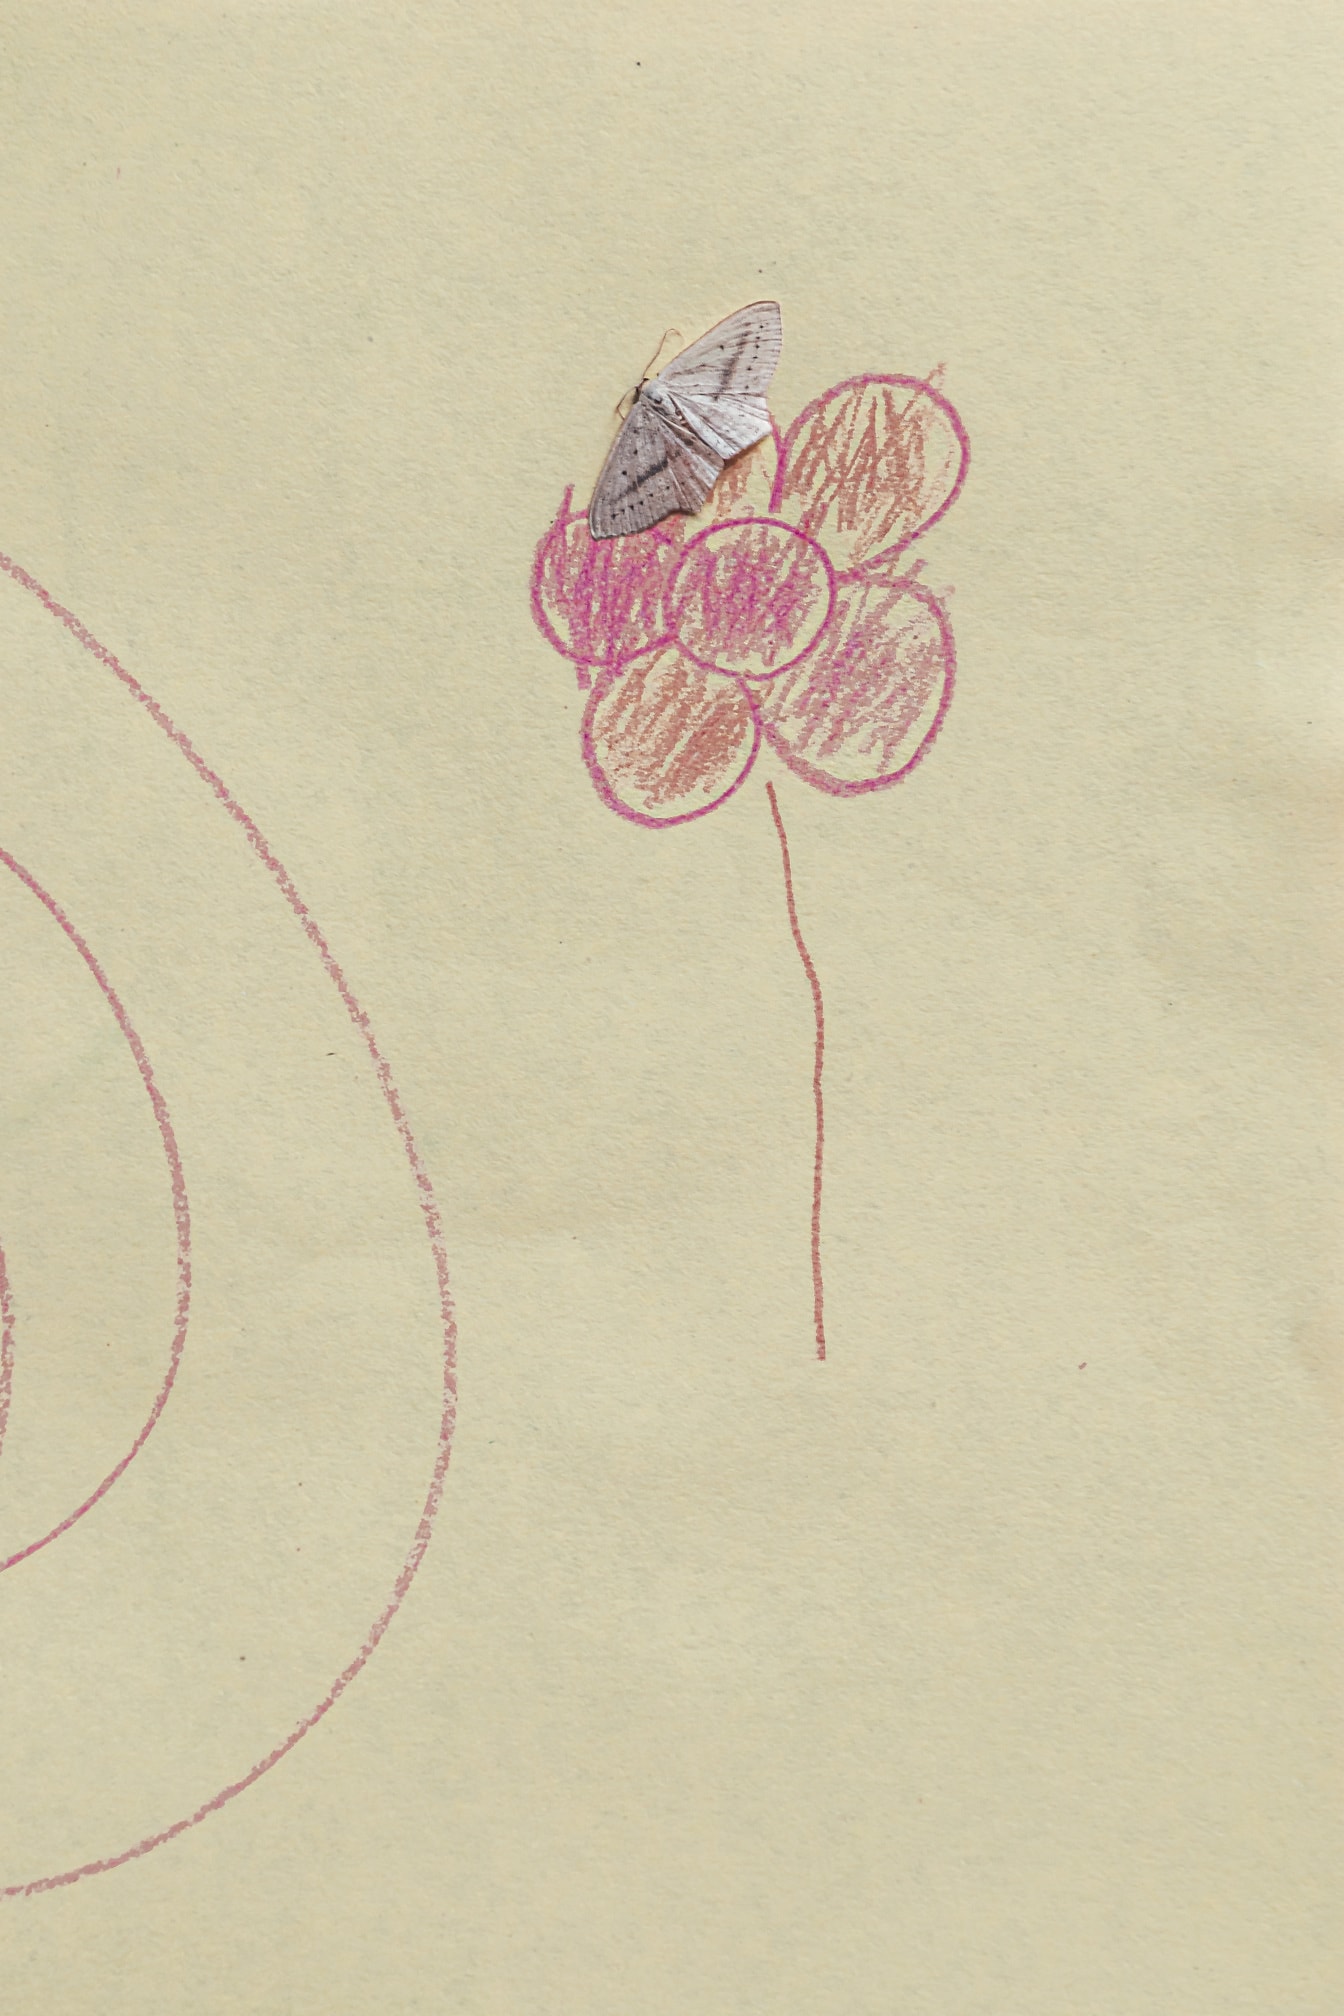 Borboleta branca pequena no papel com desenho da flor rosada